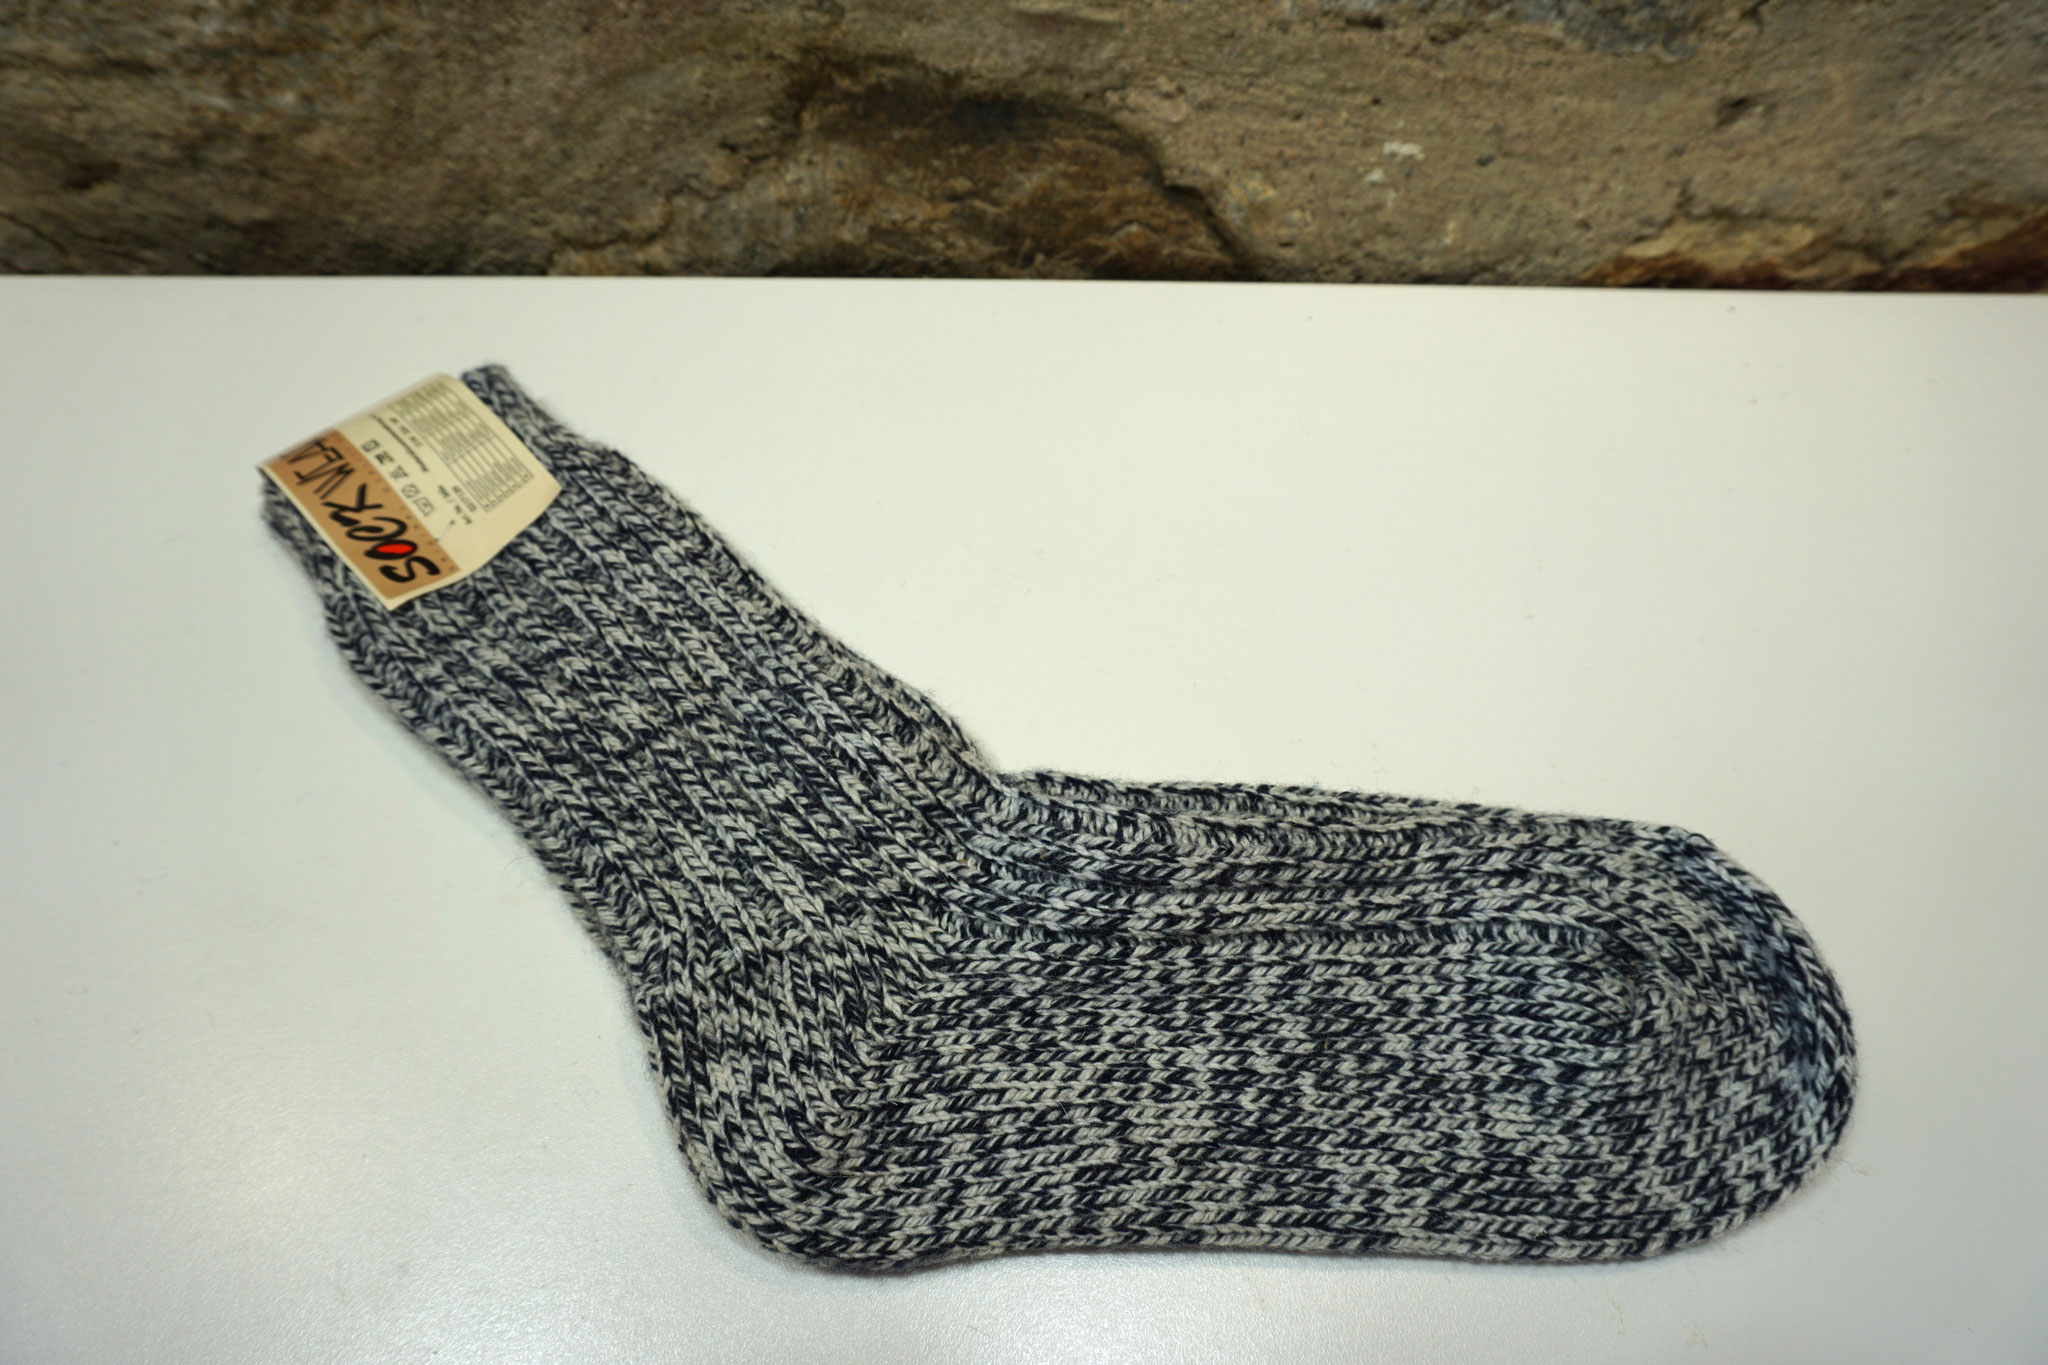 Unisex Socken, schwarz/weiß gesprenkelt, Größe 39-42, aus 51% Schurwolle und Polyacryl. Neu. Preis: 4,00 €